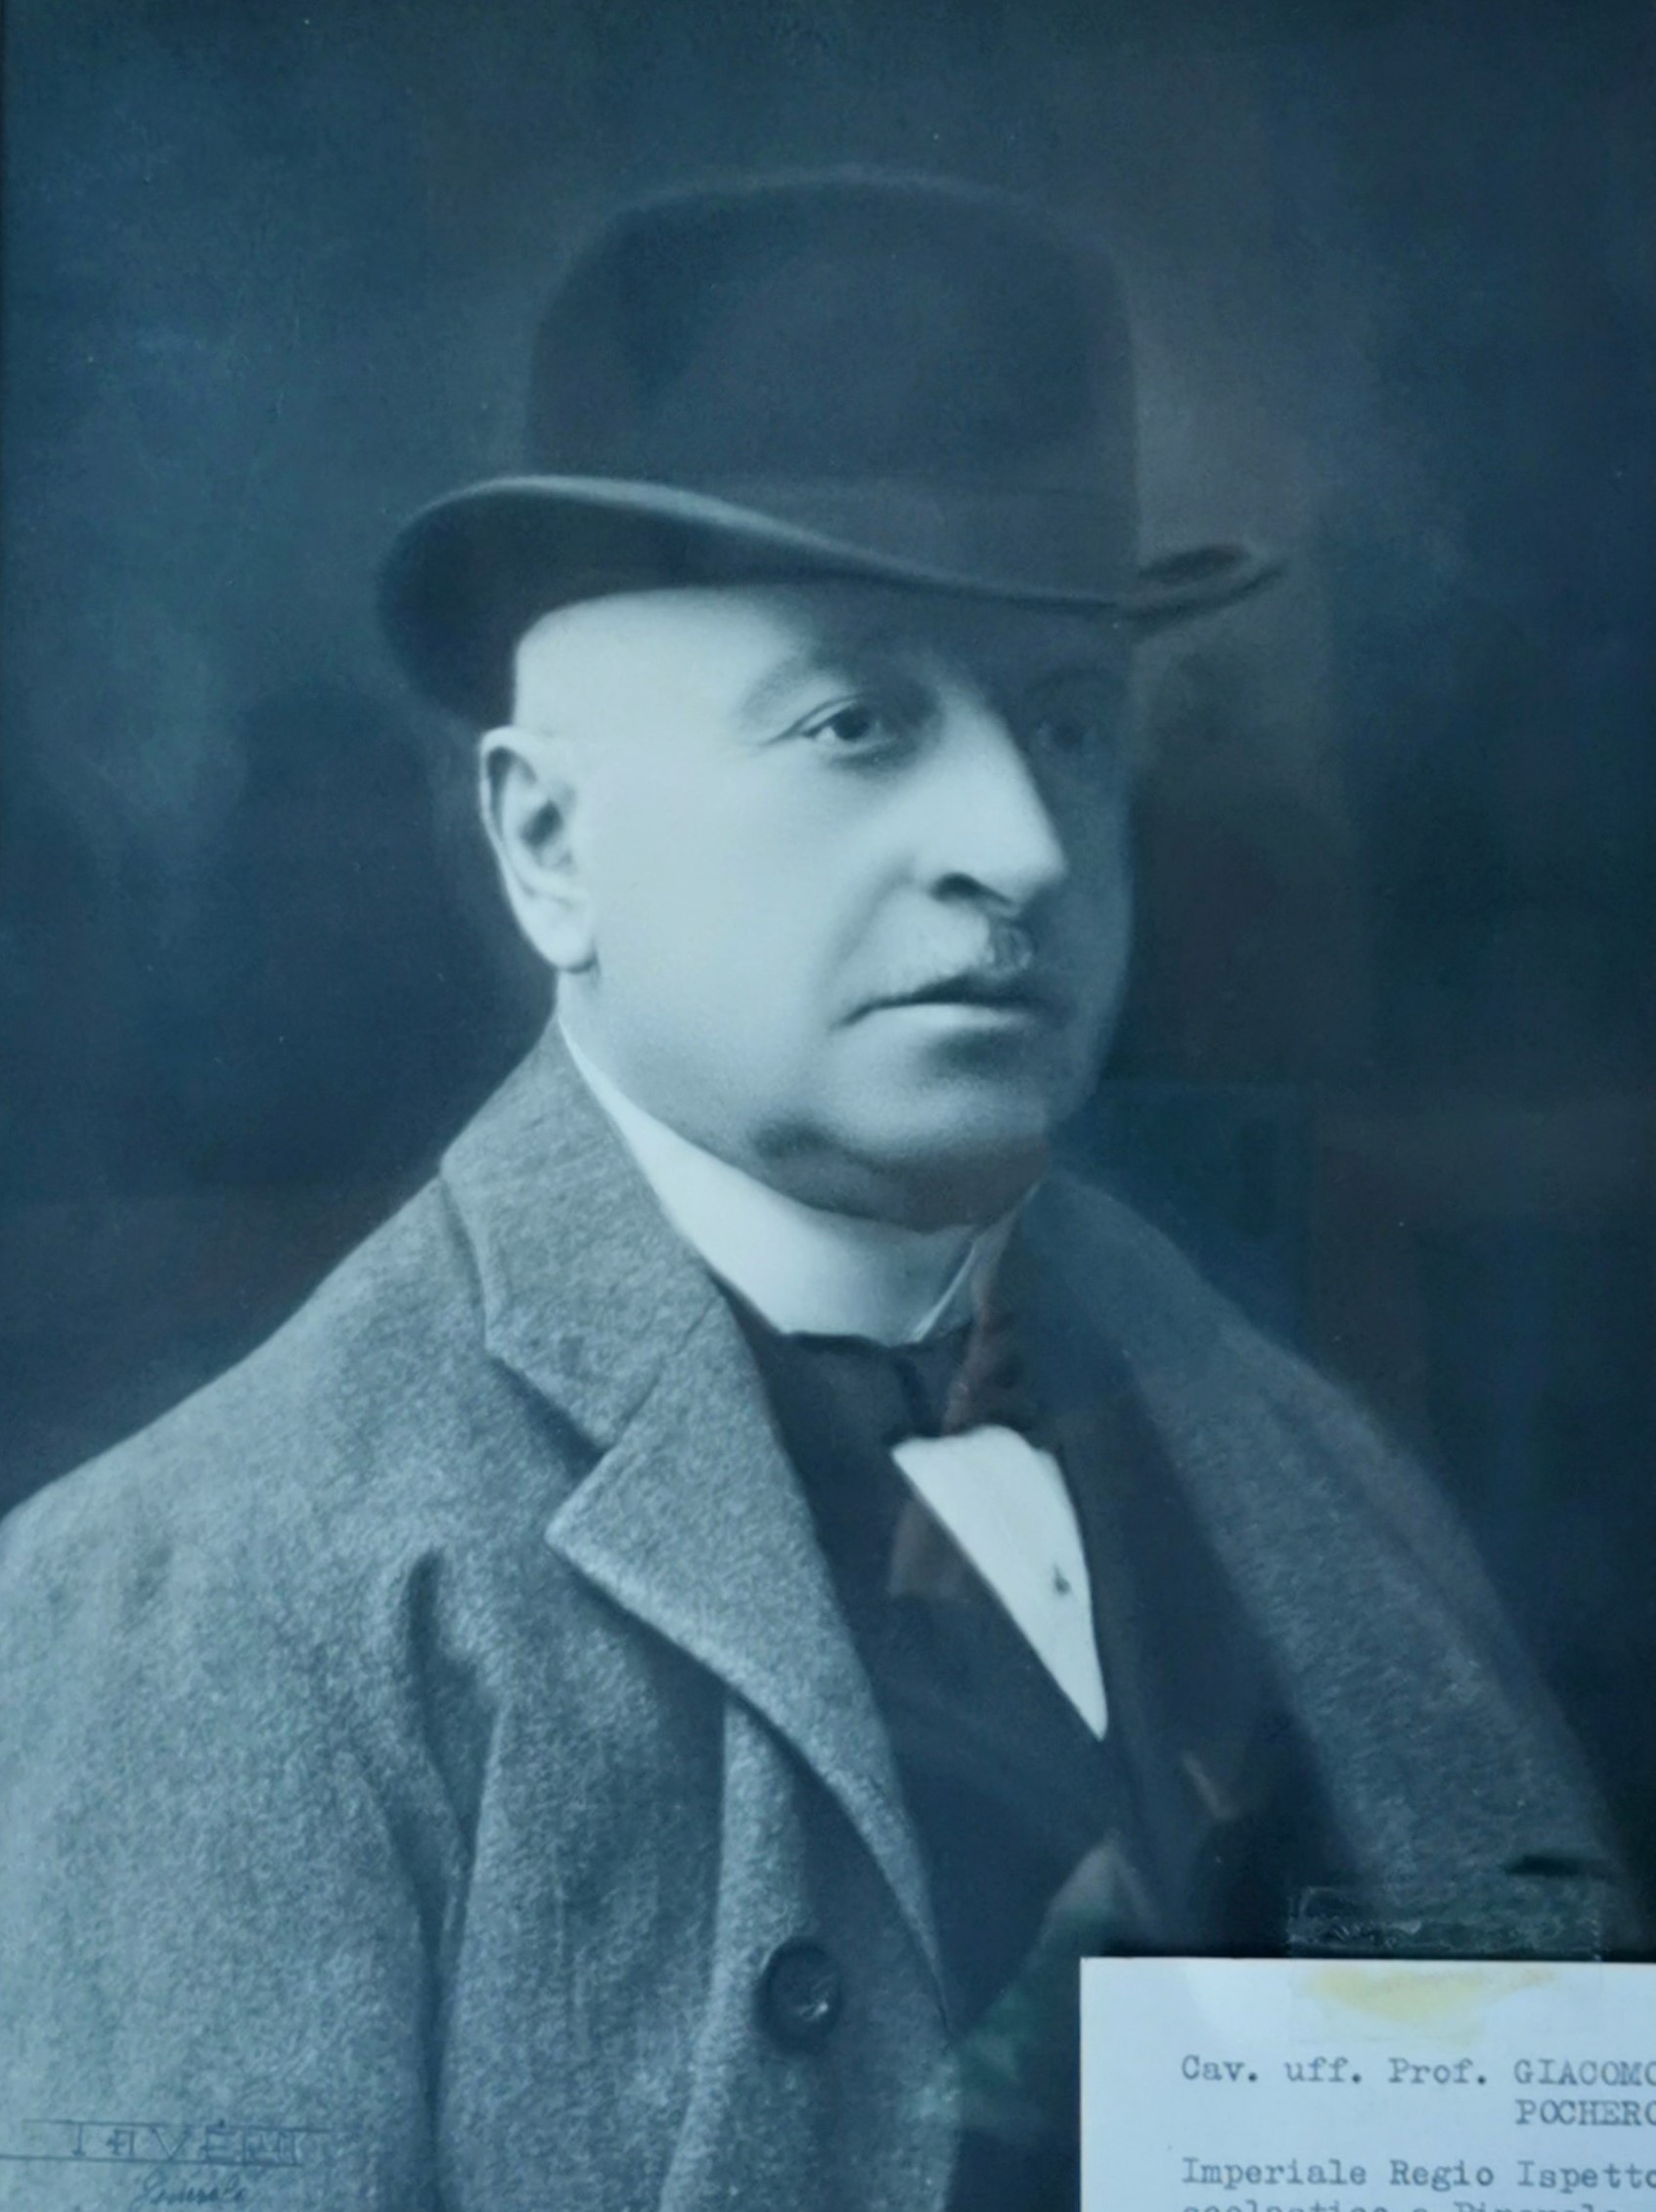 Giacomo Pochero